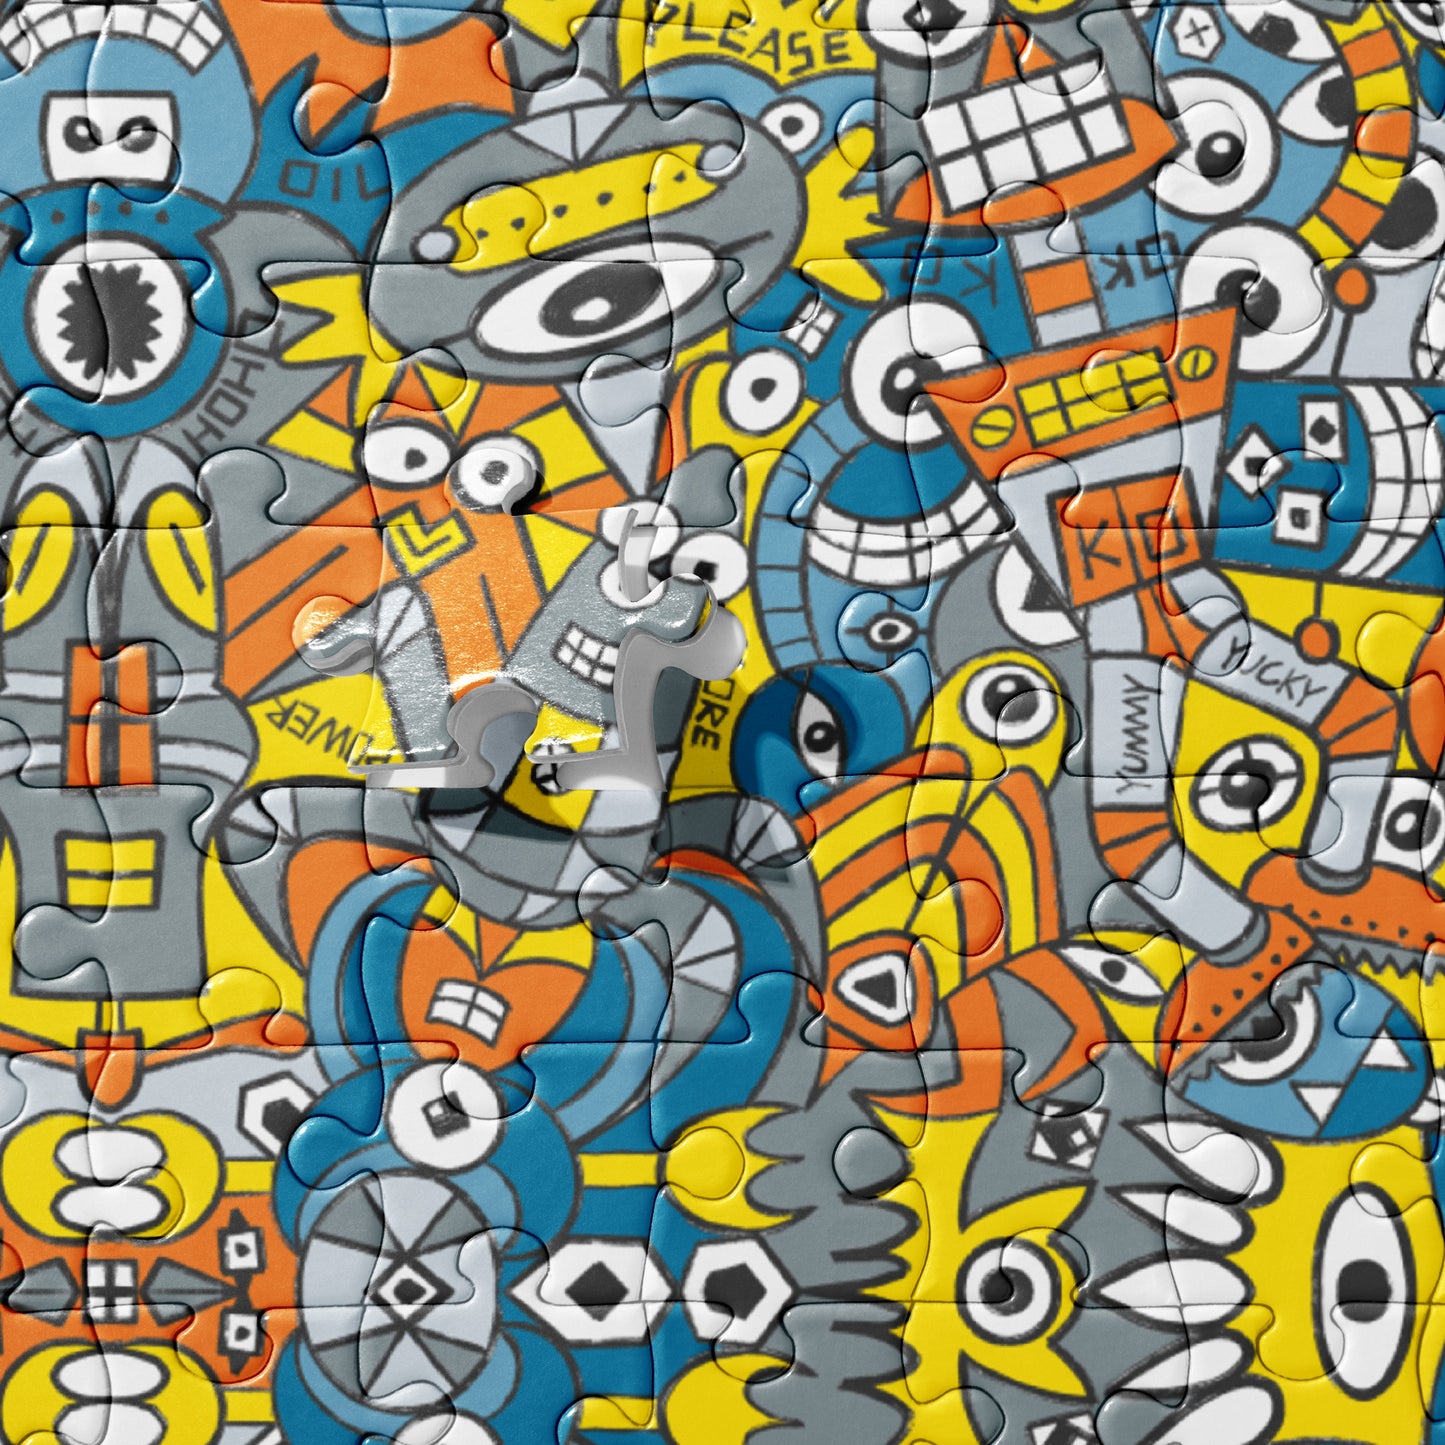 Retro robots doodle art Jigsaw puzzle. Product details